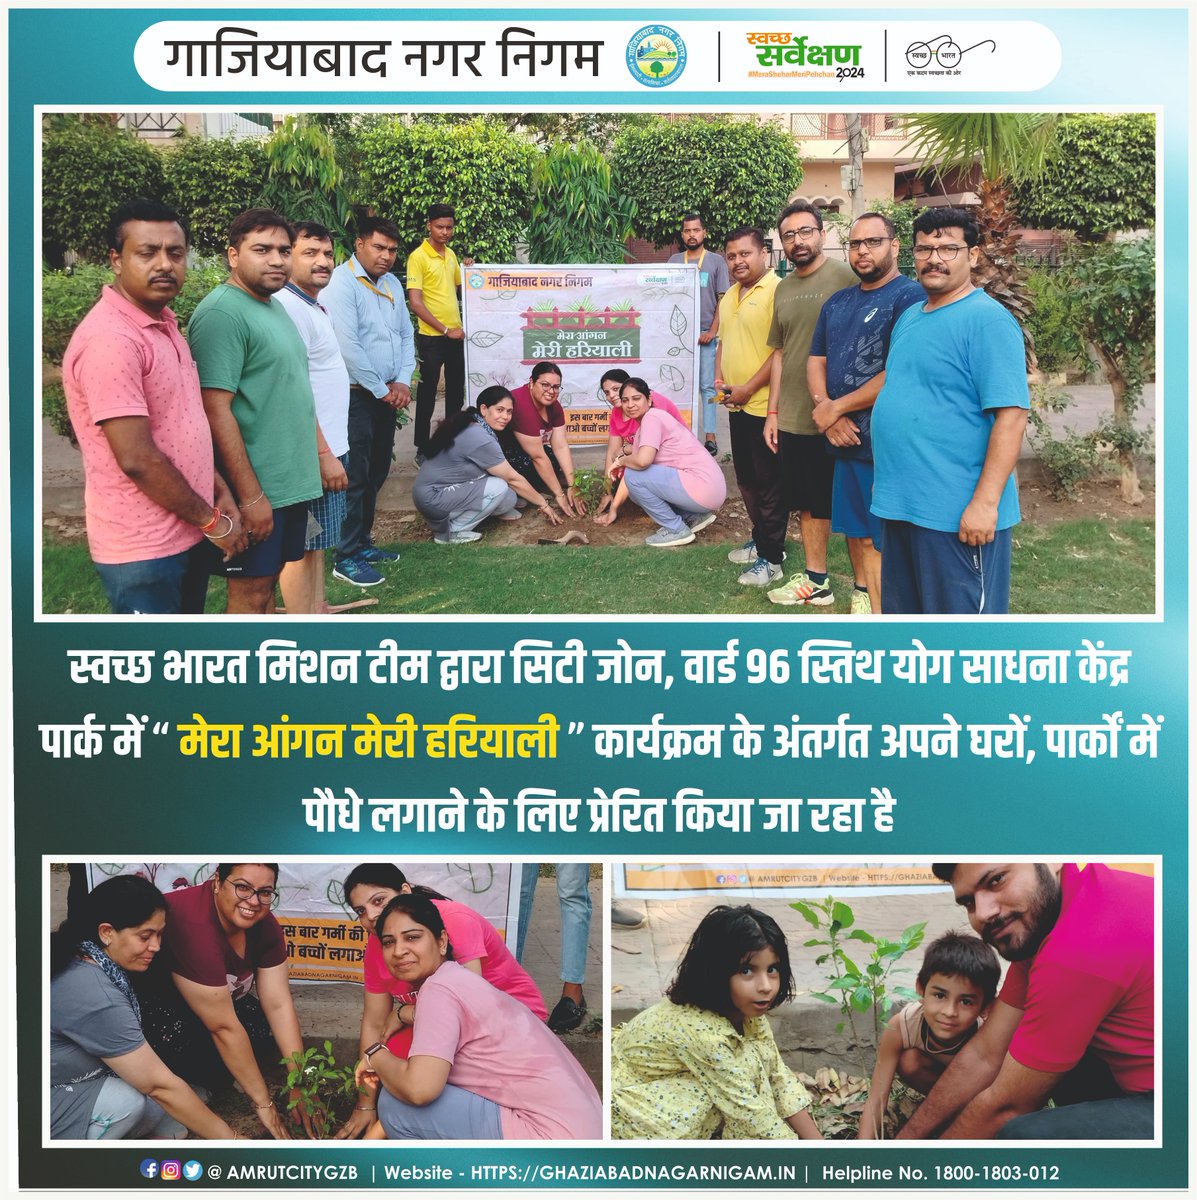 ULB CODE - 800734
स्वच्छ भारत मिशन टीम द्वारा सिटी जोन, वार्ड 96 स्तिथ योग साधना केंद्र पार्क में “ मेरा आंगन मेरी हरियाली ” कार्यक्रम के अंतर्गत अपने घरों, पार्कों में पौधे लगाने के लिए प्रेरित किया जा रहा है
@SwachhBharatGov @SBM_UP
#YouthVsGarbage #GarbageFreeIndia